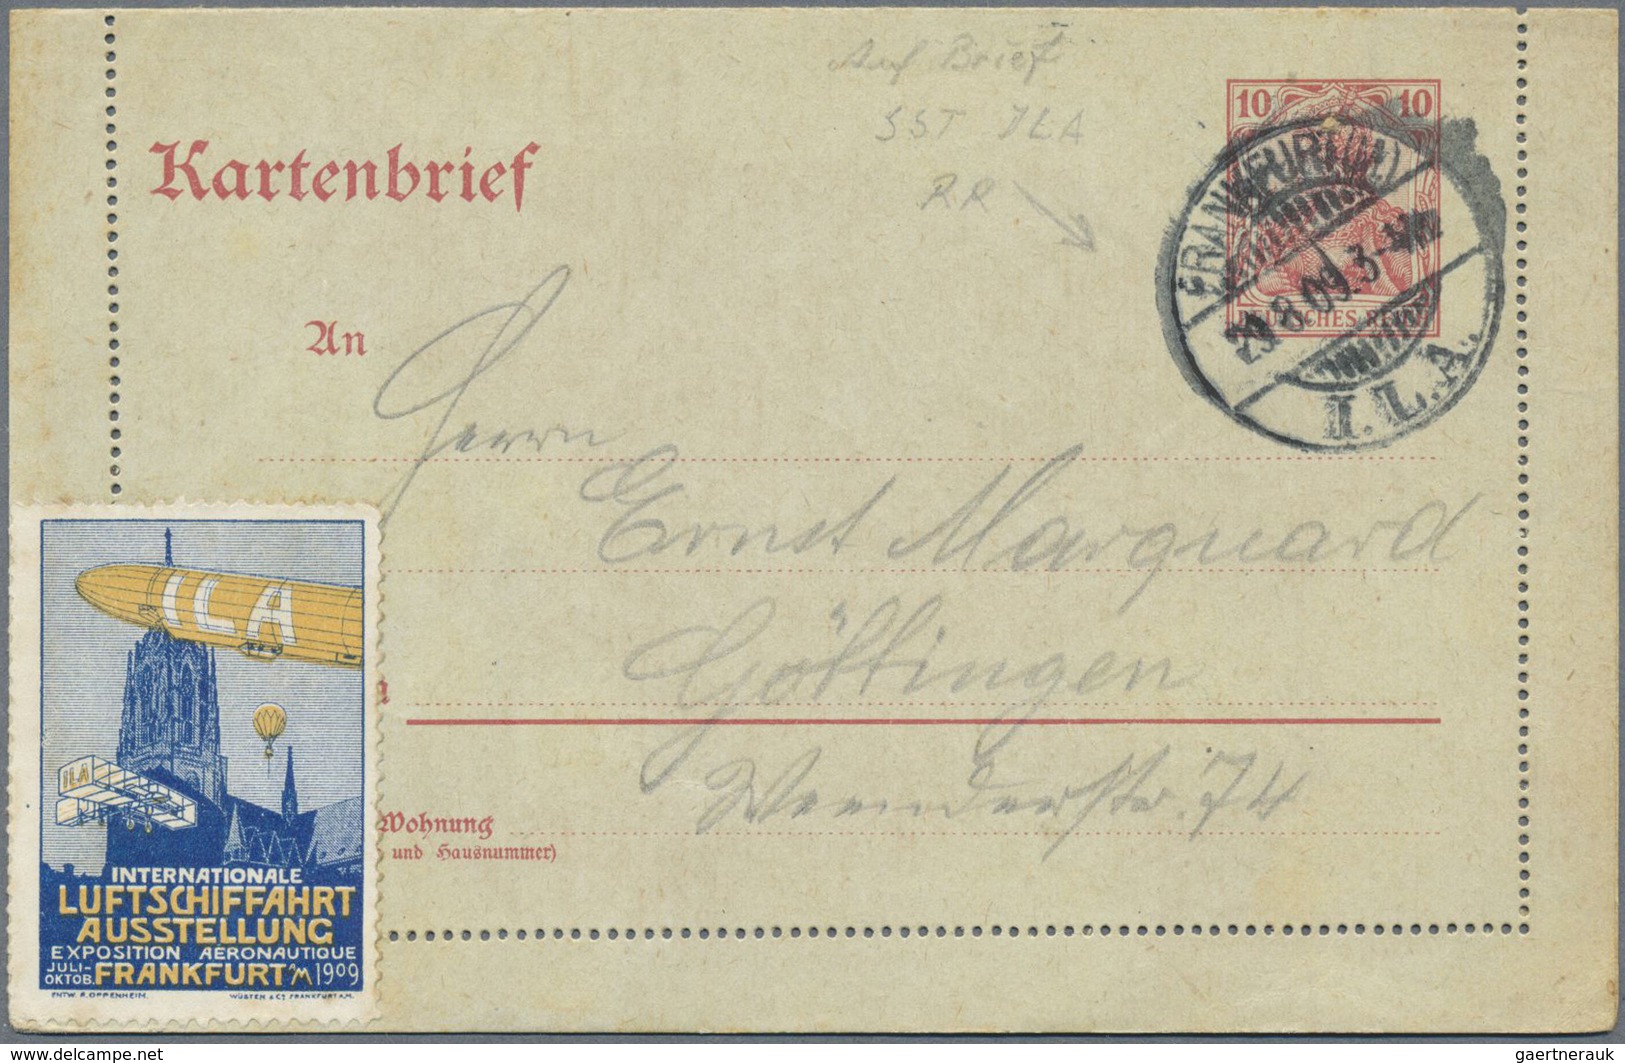 GA Deutsches Reich - Stempel: 1909: I.L.A./FRANKFURT (M.), 29.8.09. Rarer Sonderstempel "ohne Sterne" A - Maschinenstempel (EMA)